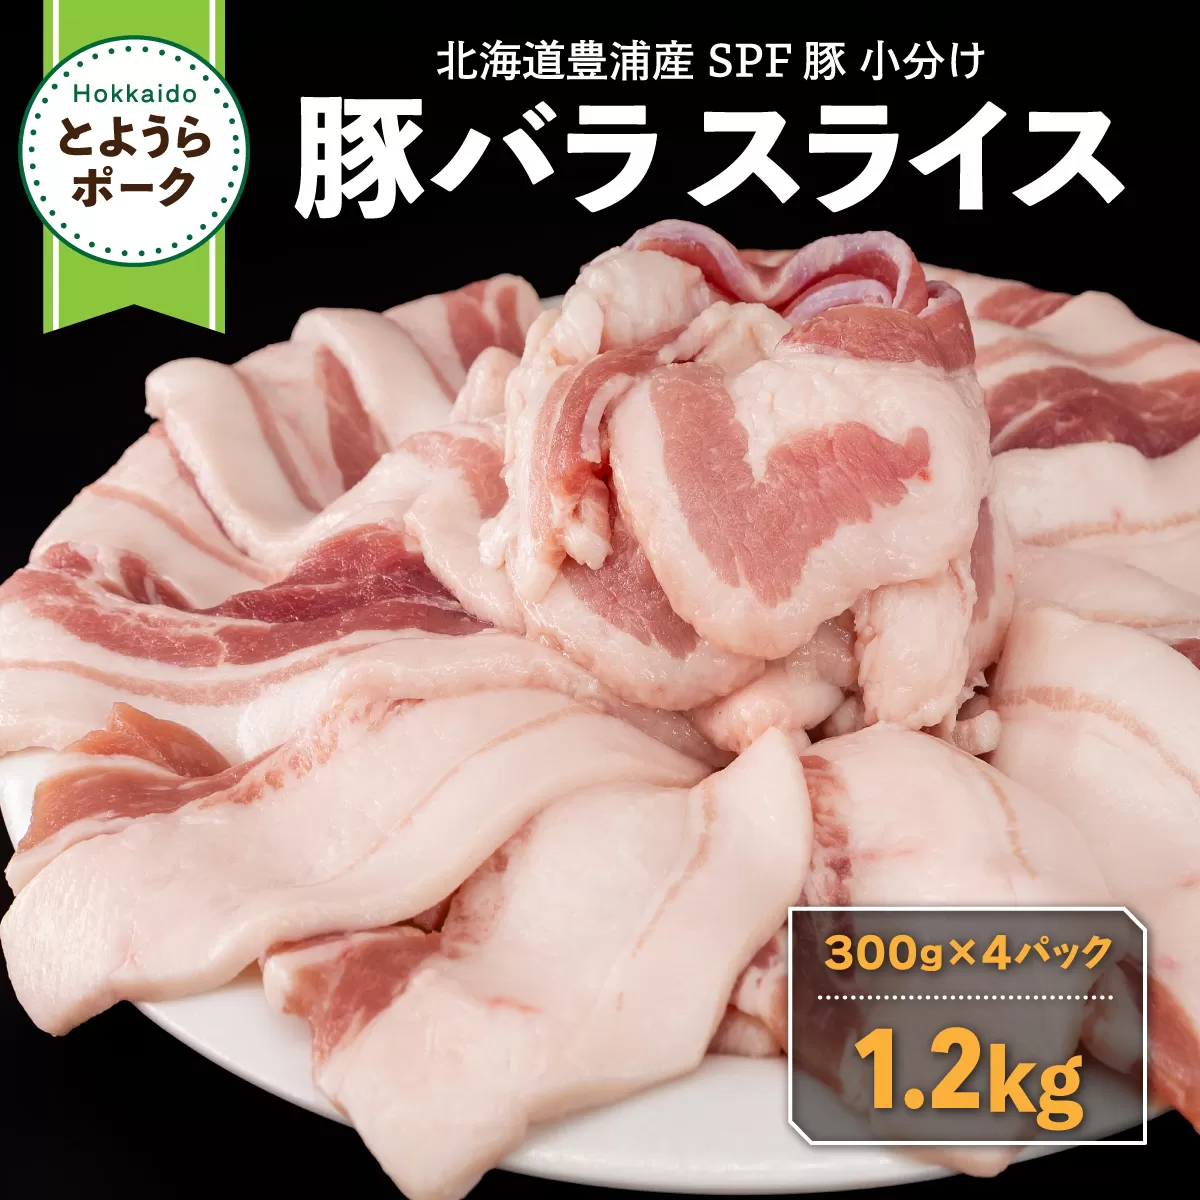 豚肉 バラ とようらポーク 1.2kg 豚バラ スライス 小分け 北海道 豊浦産 SPF豚 TYUO071